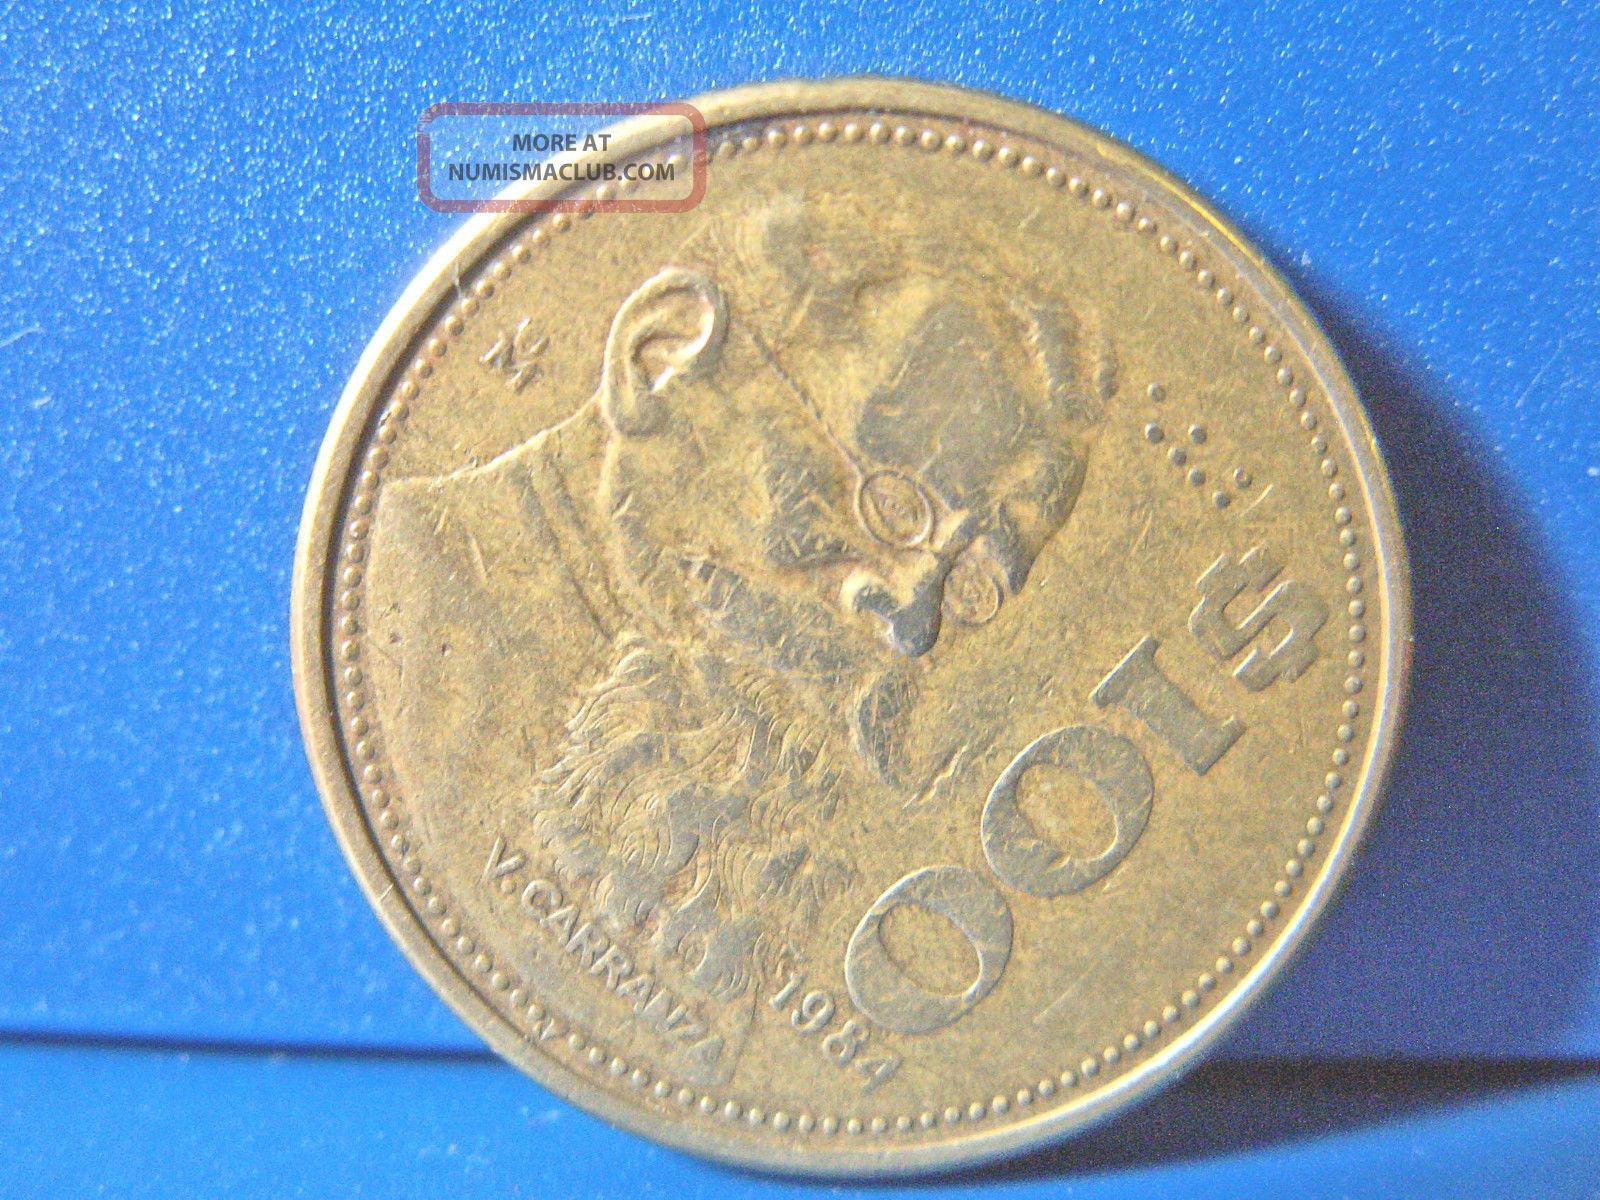 Mexico 1988 $100 Pesos Mexican Coiin Mexico photo